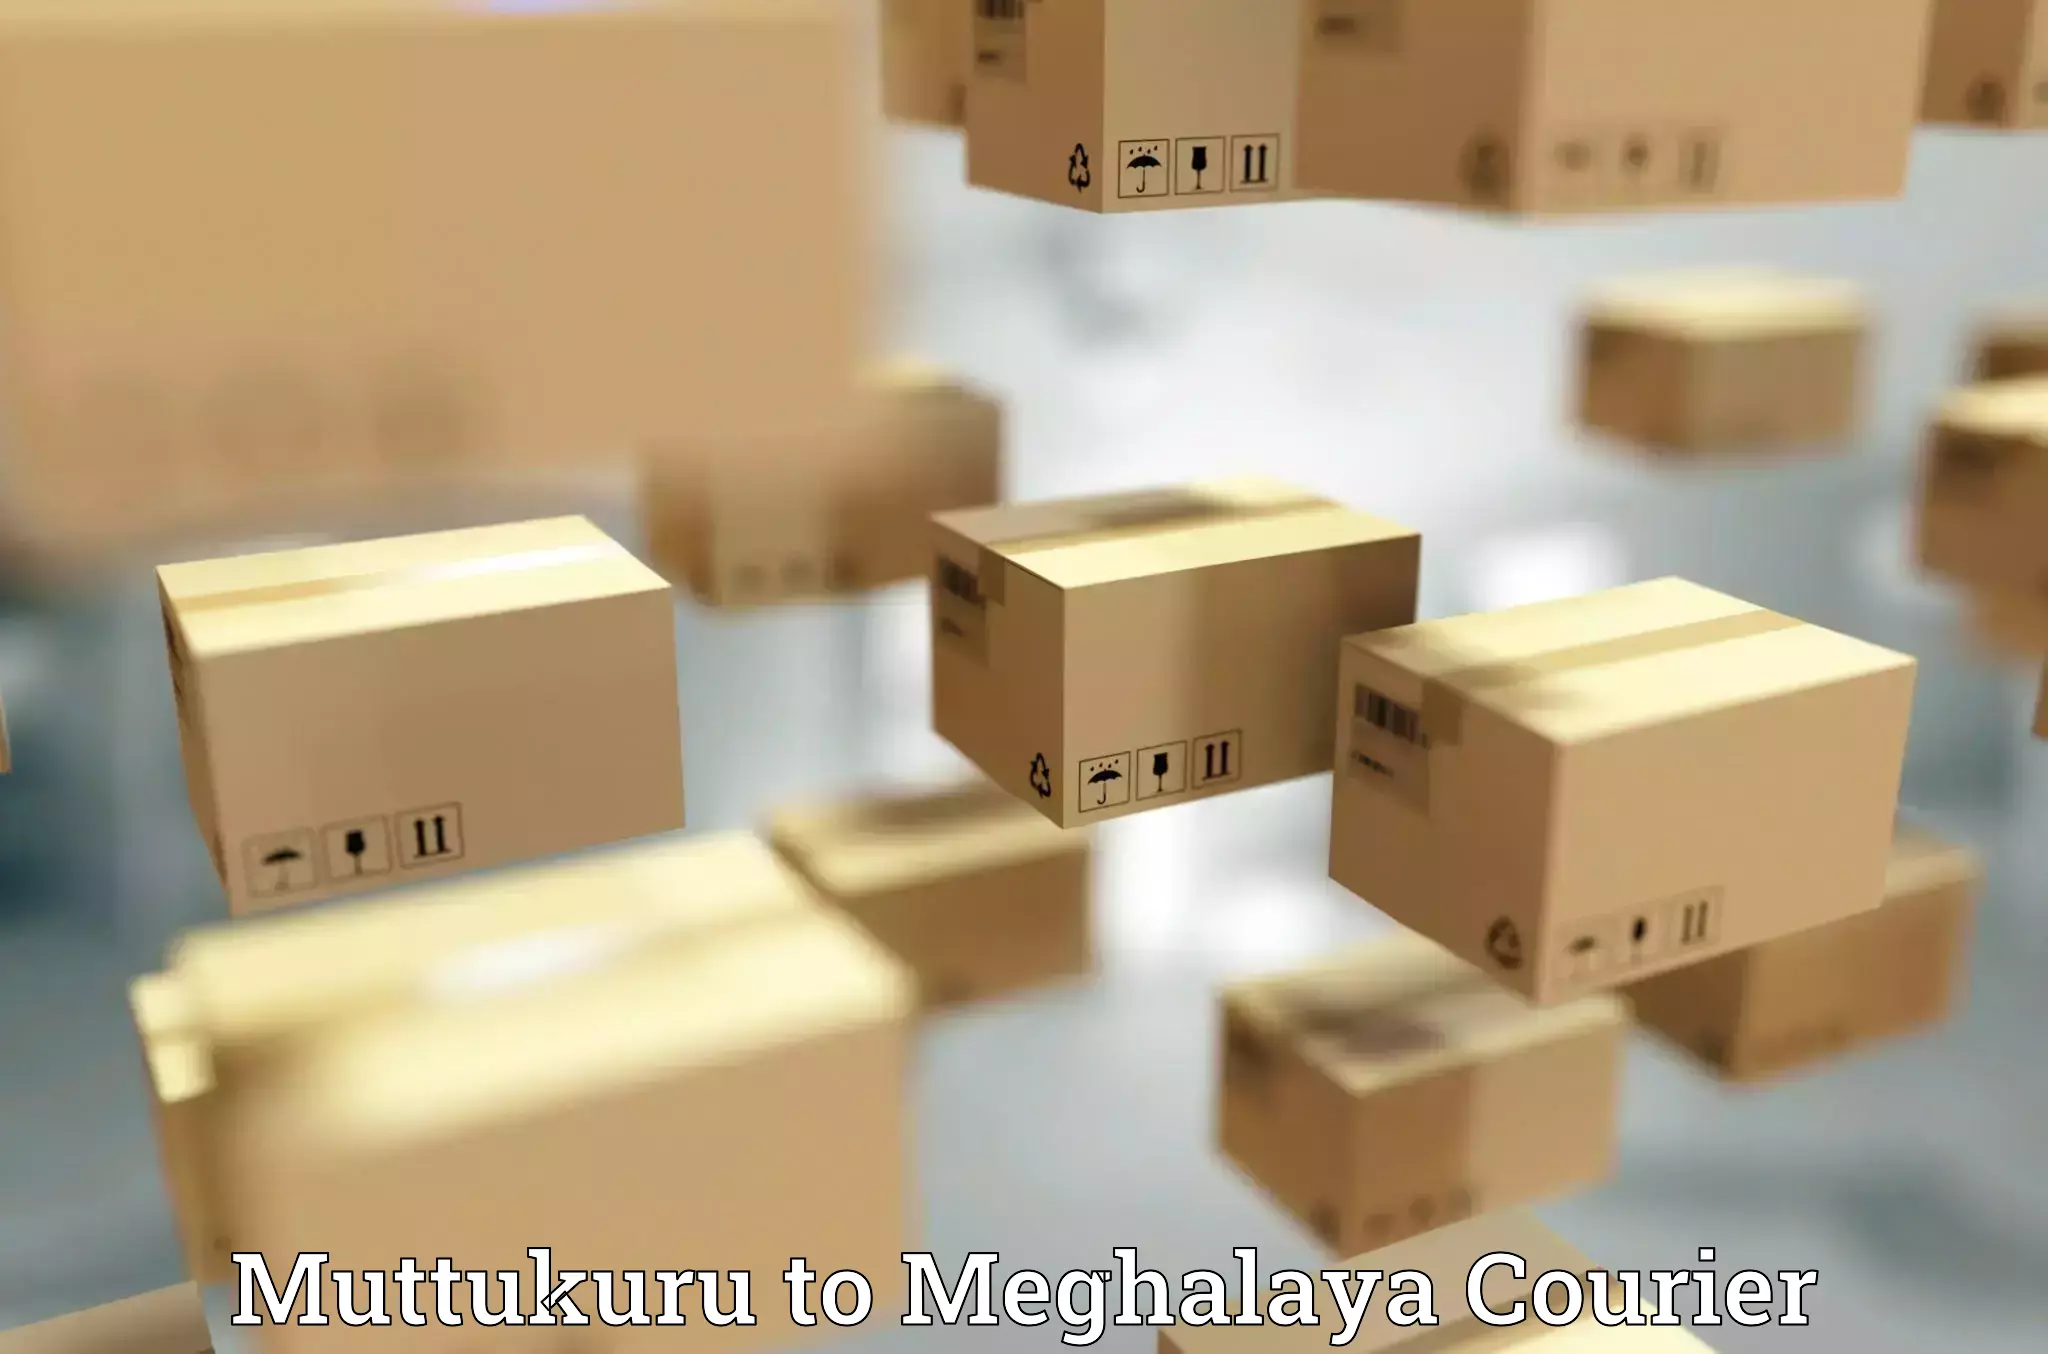 Supply chain efficiency Muttukuru to Phulbari